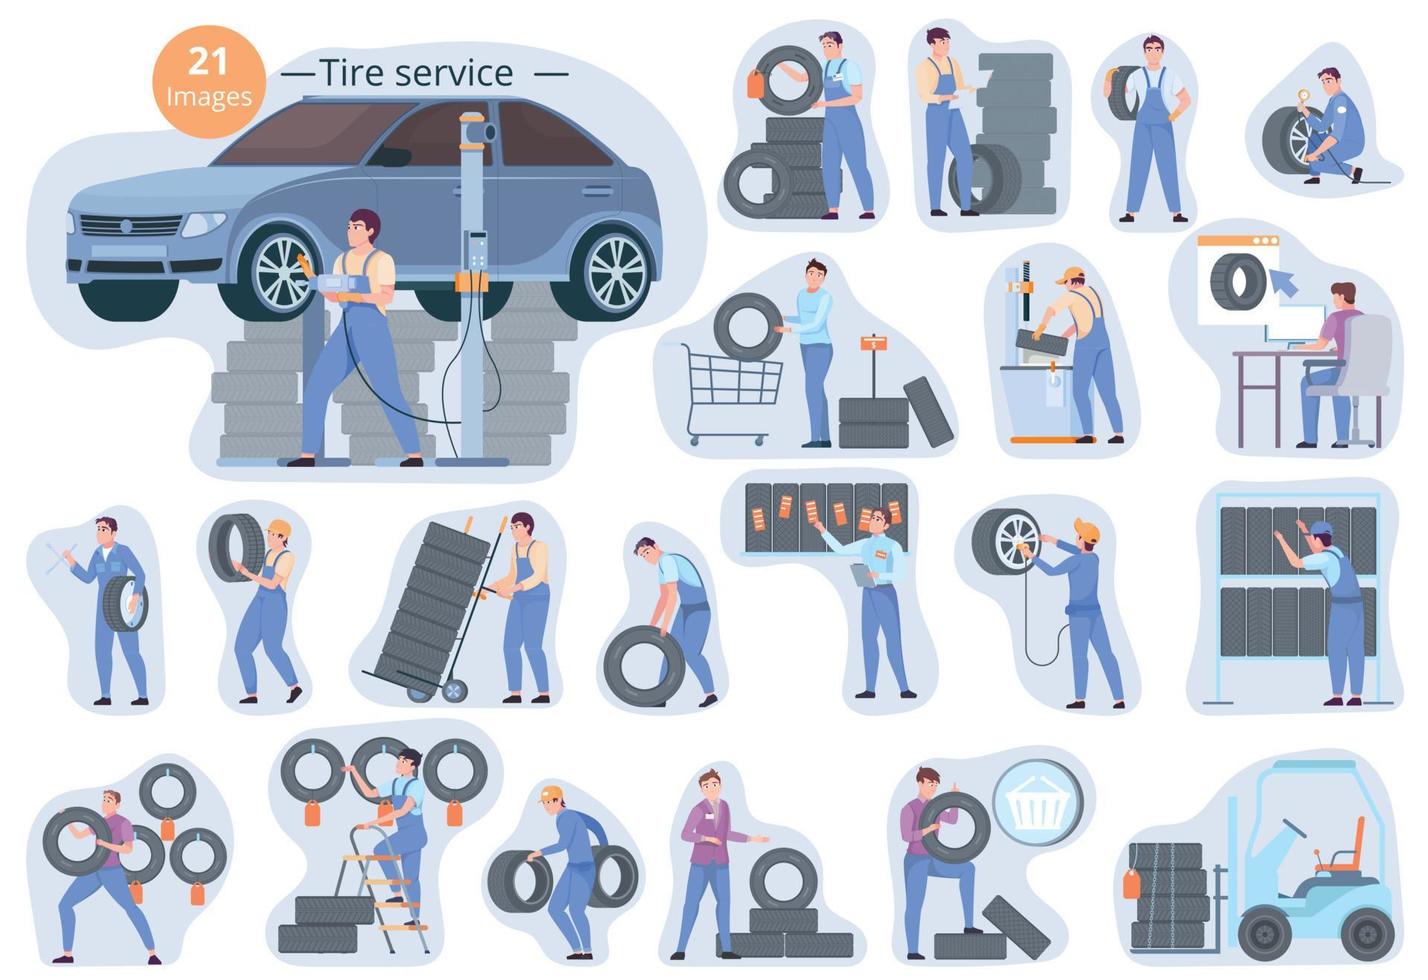 Tire Service Composition Set vector